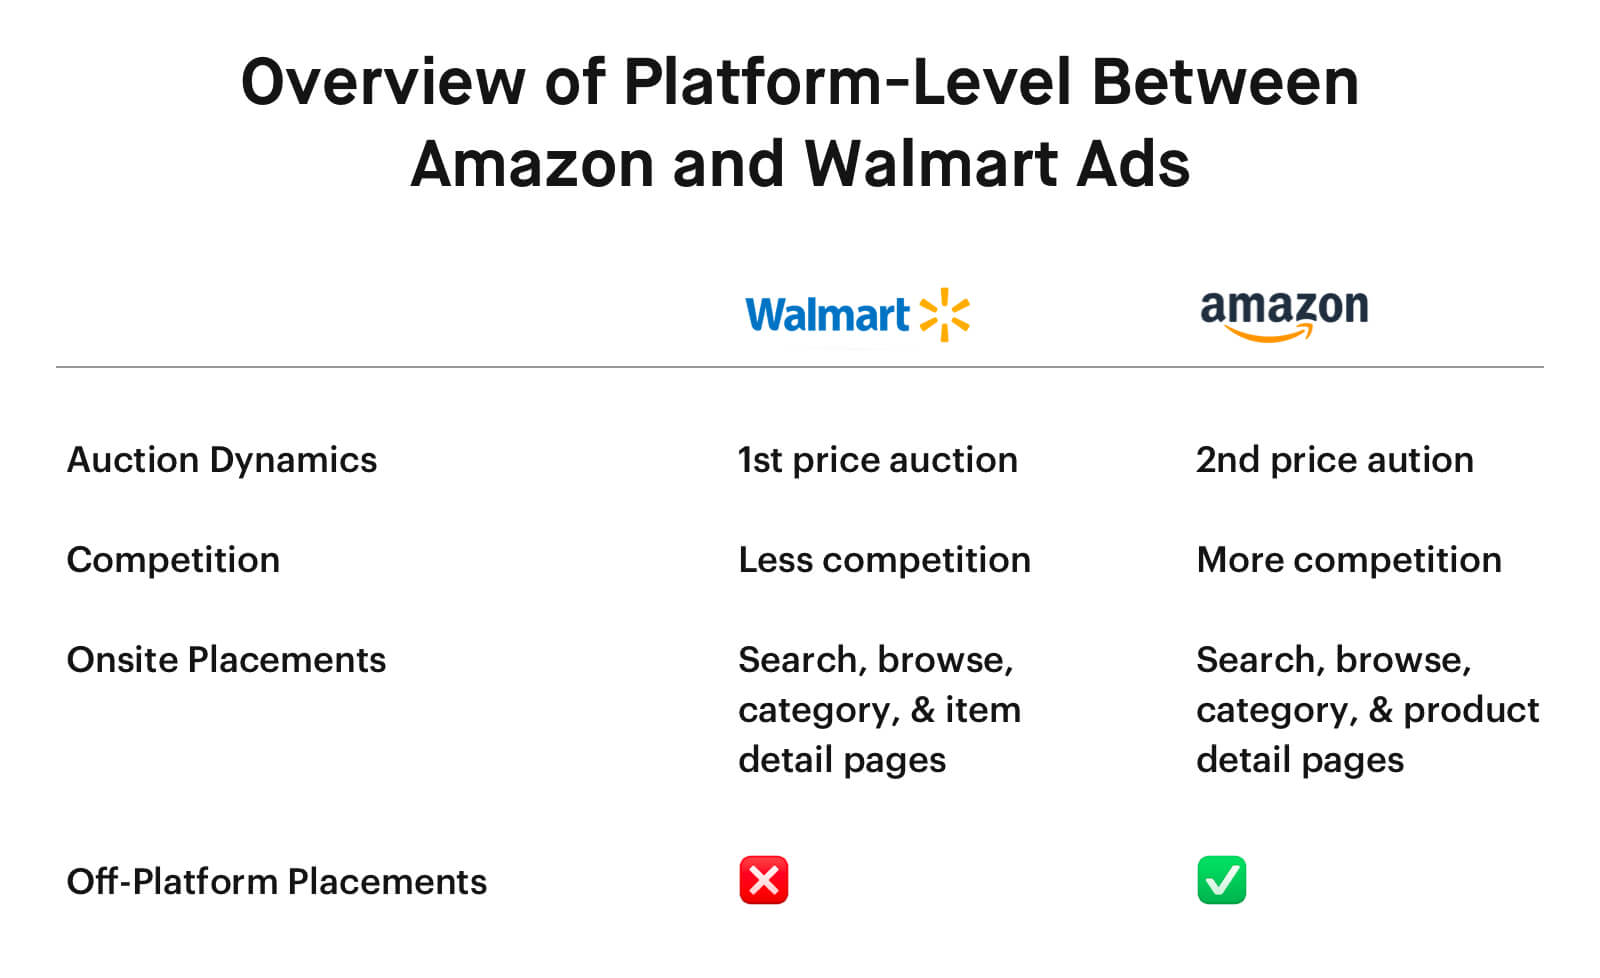 ad comparison Platform-level